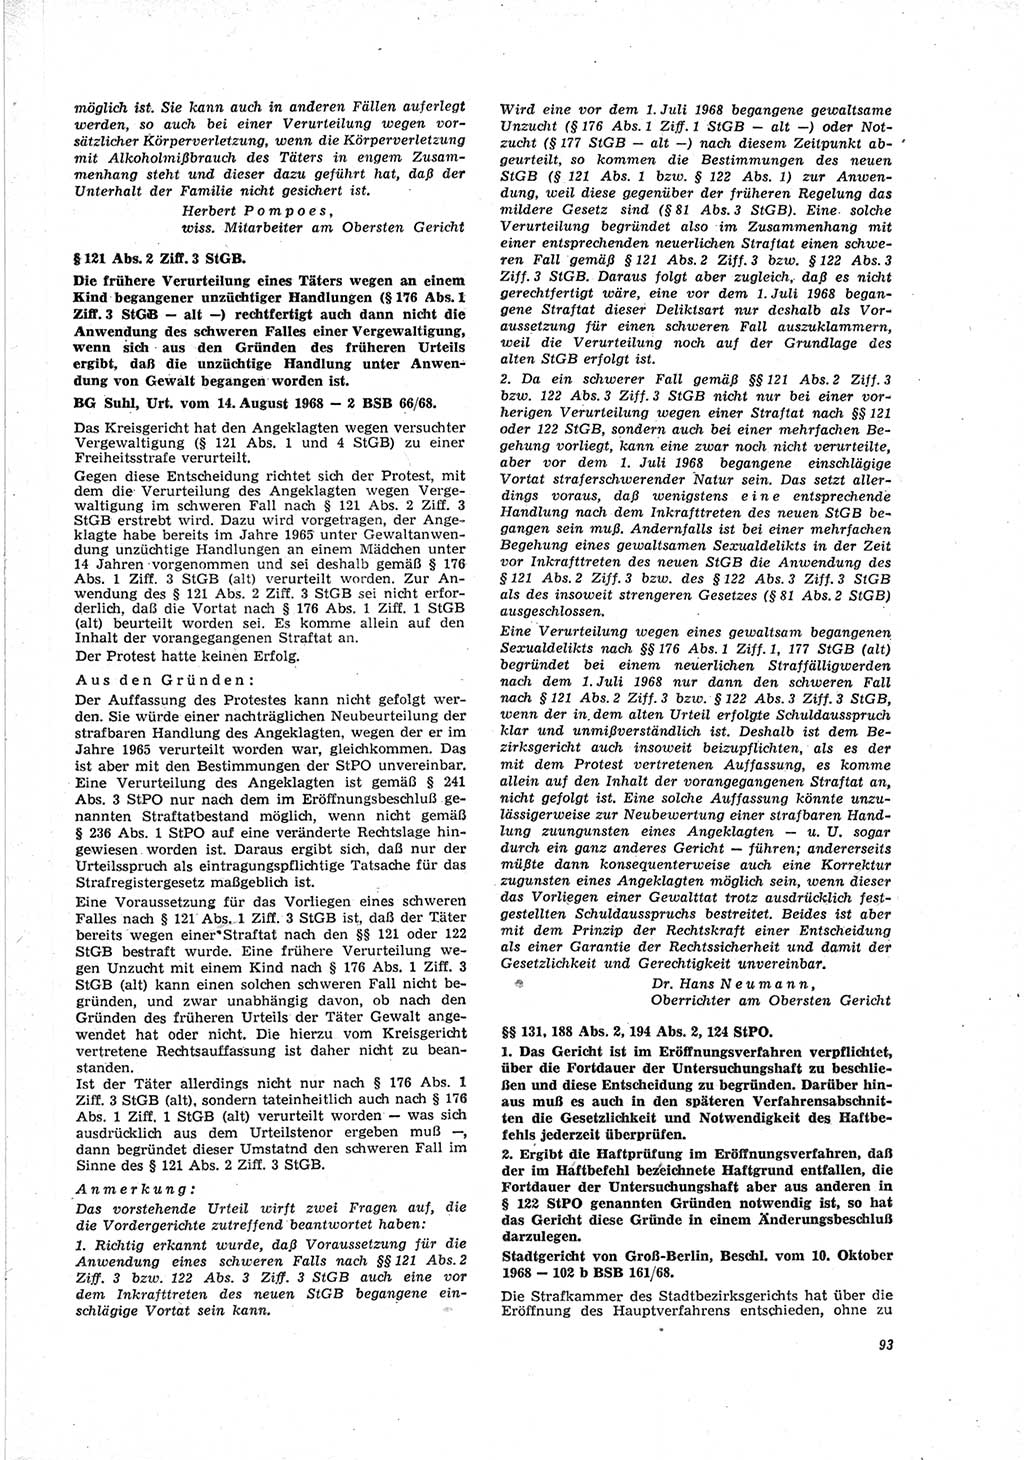 Neue Justiz (NJ), Zeitschrift für Recht und Rechtswissenschaft [Deutsche Demokratische Republik (DDR)], 23. Jahrgang 1969, Seite 93 (NJ DDR 1969, S. 93)